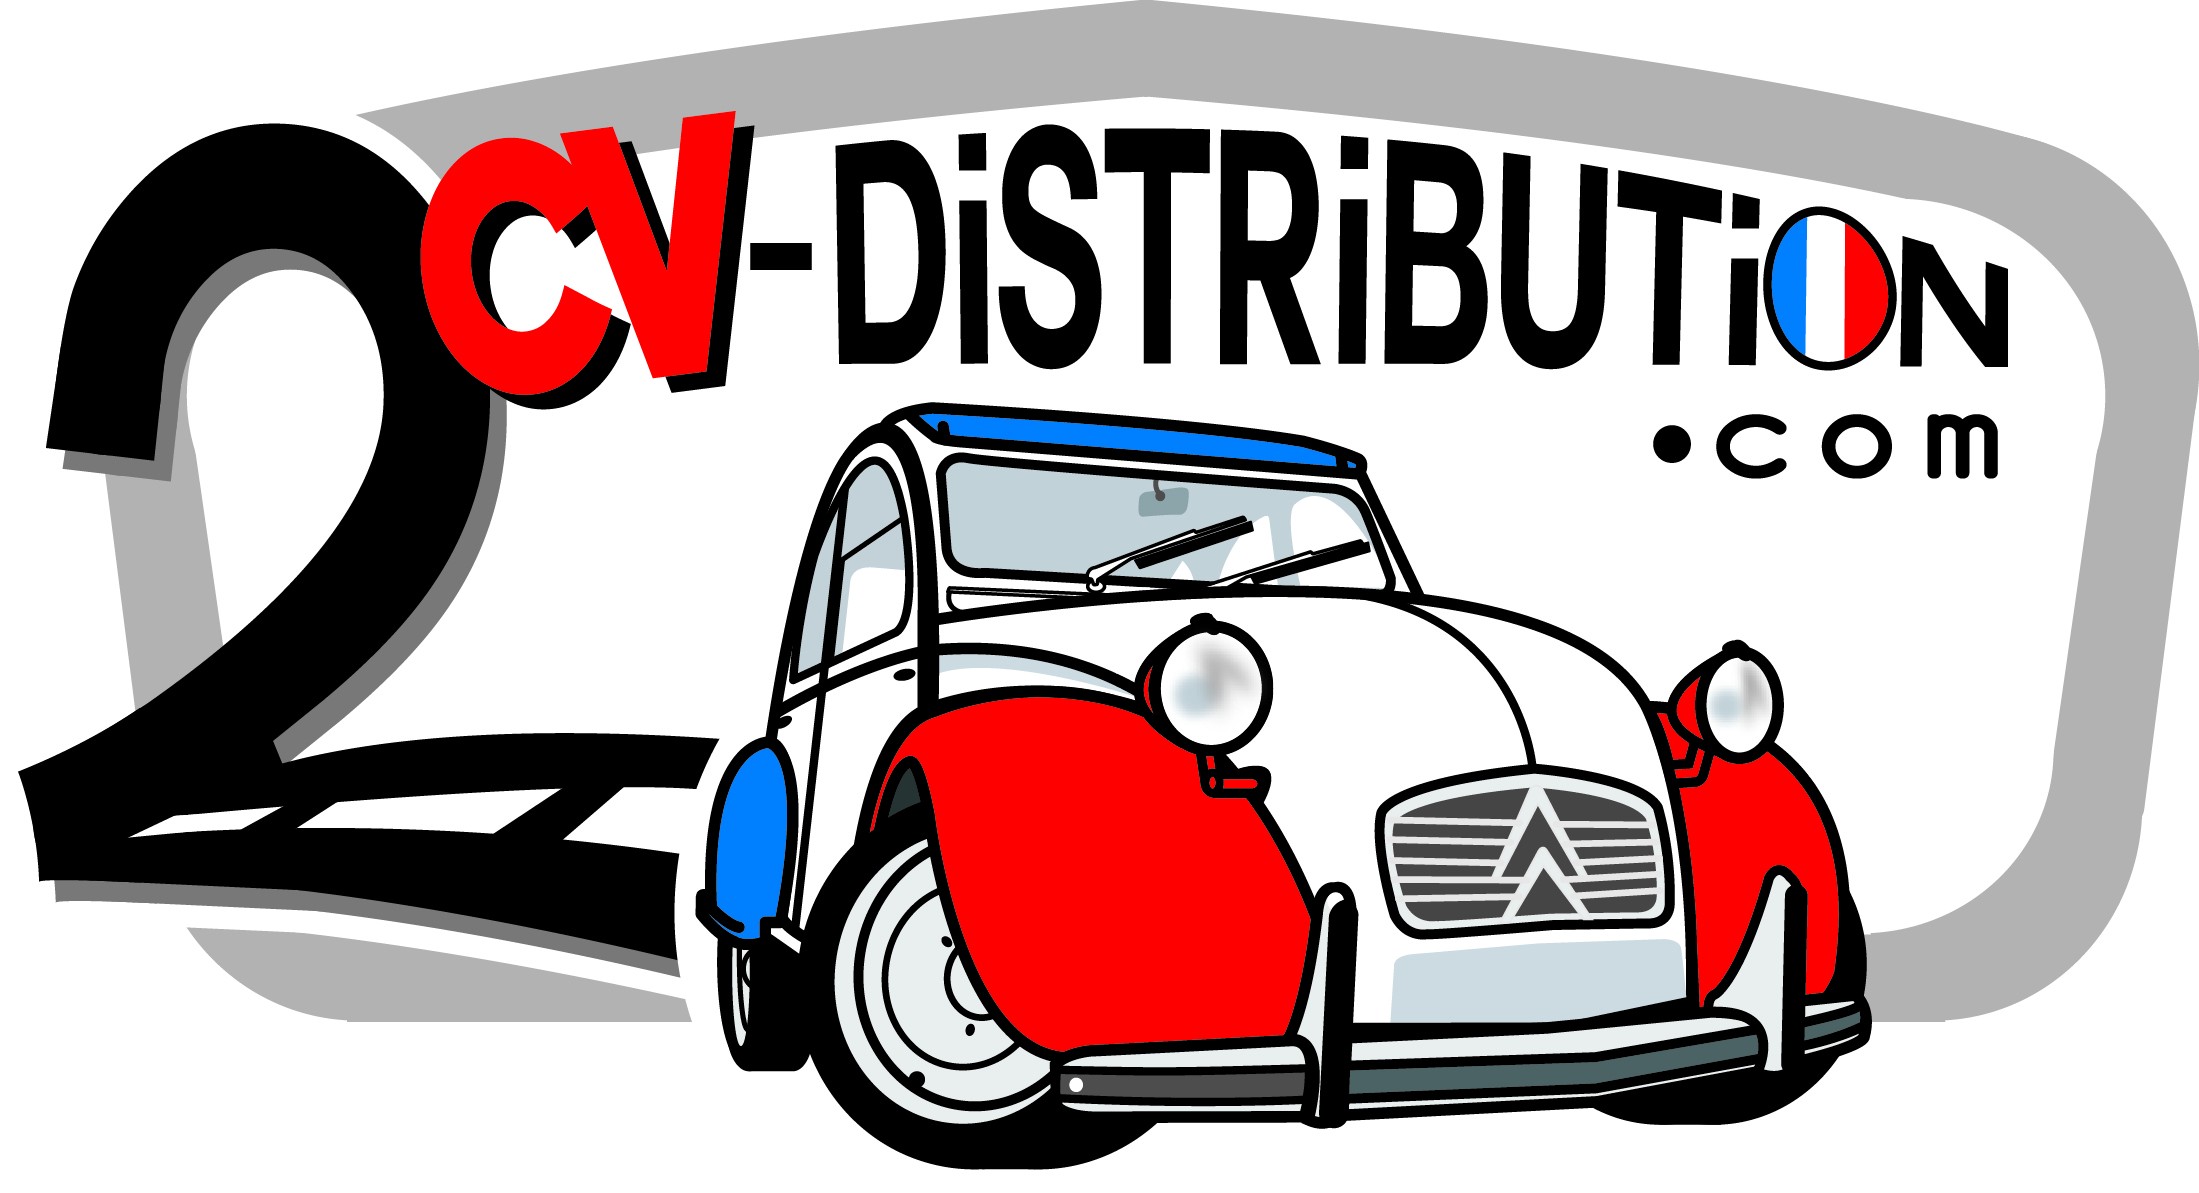 2cv-Distribution.com